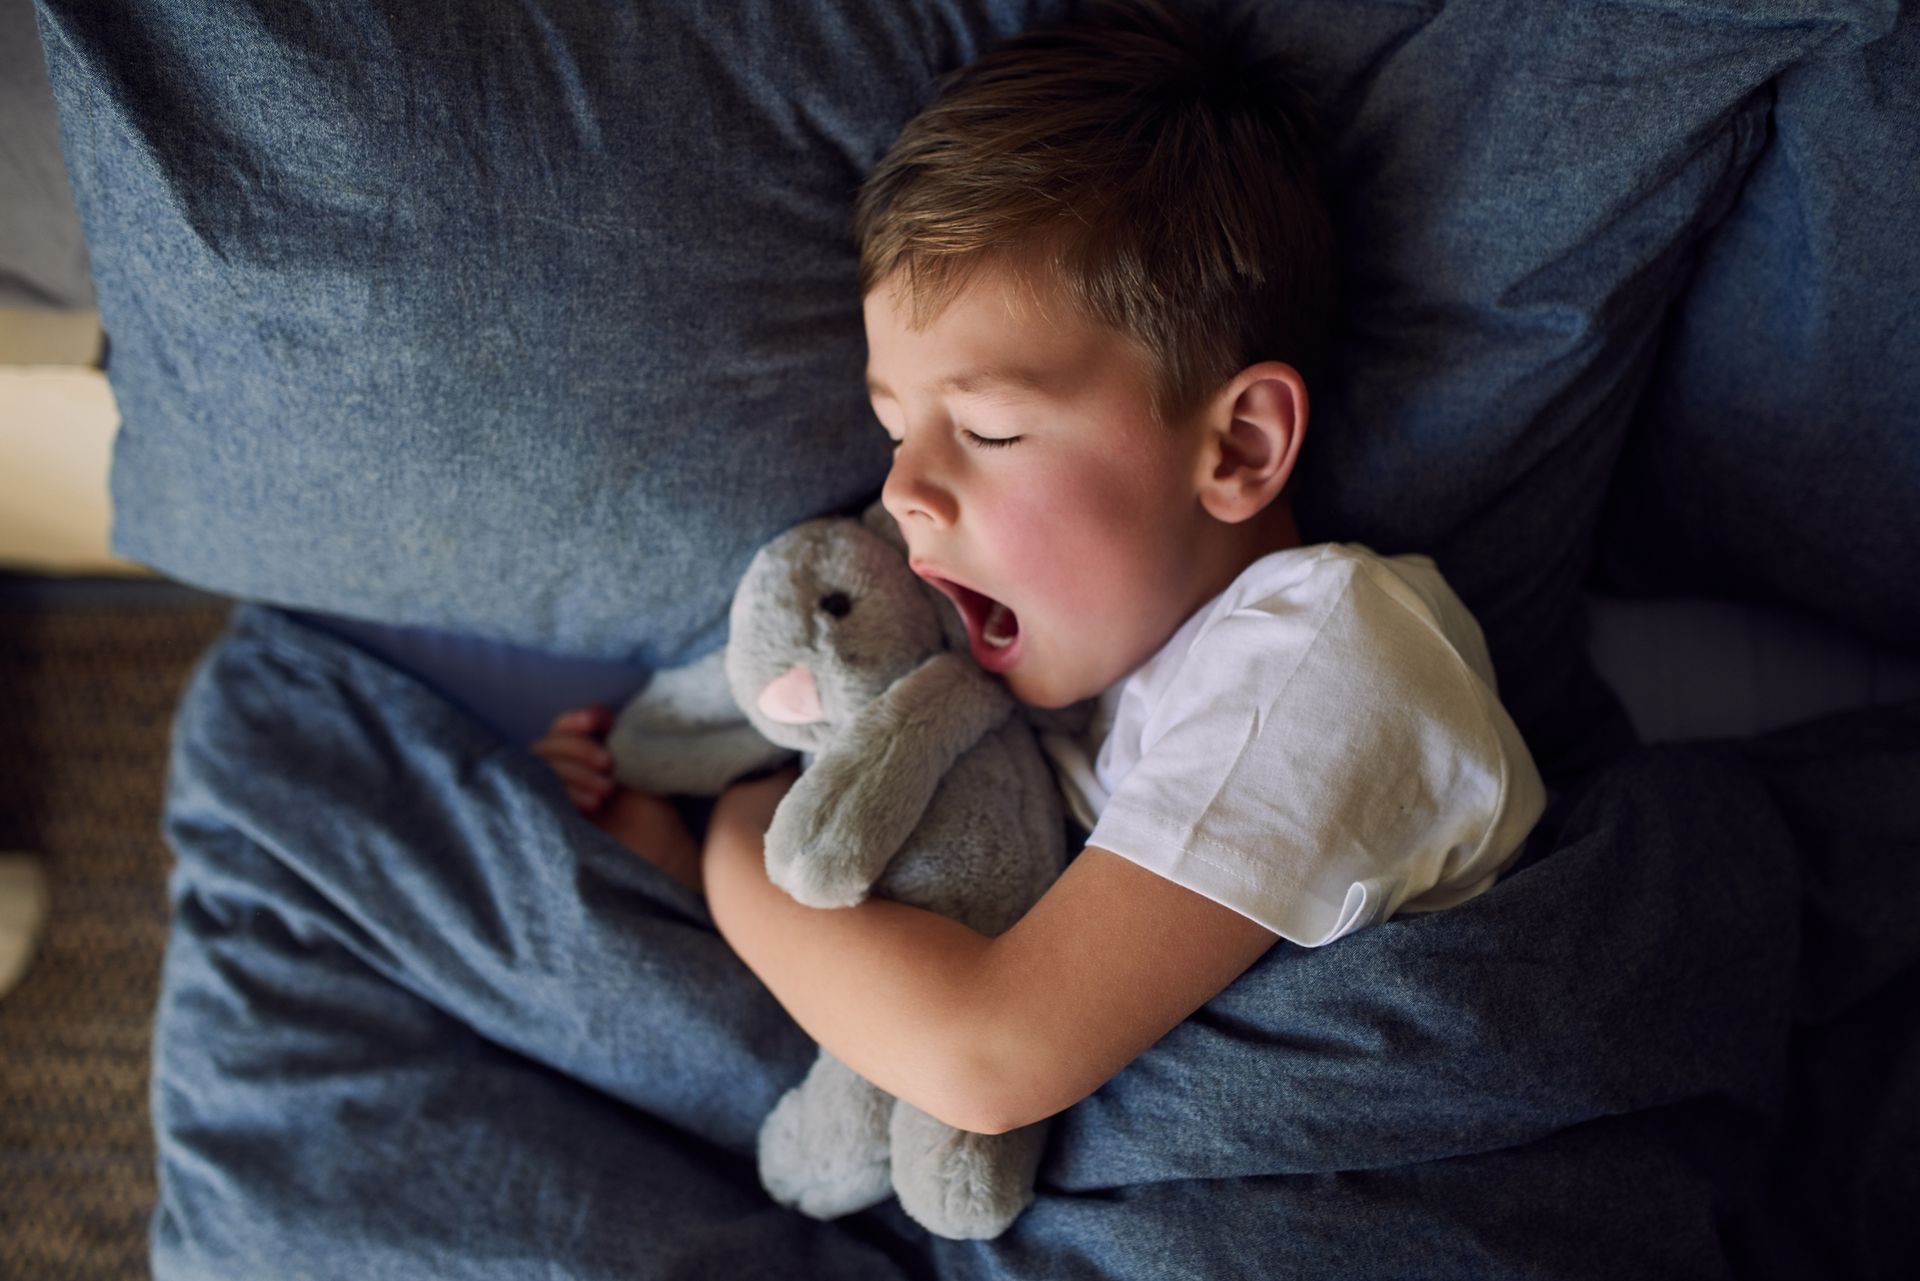 Comment aider les enfants à s'endormir et dormir mieux durant le confinement ?